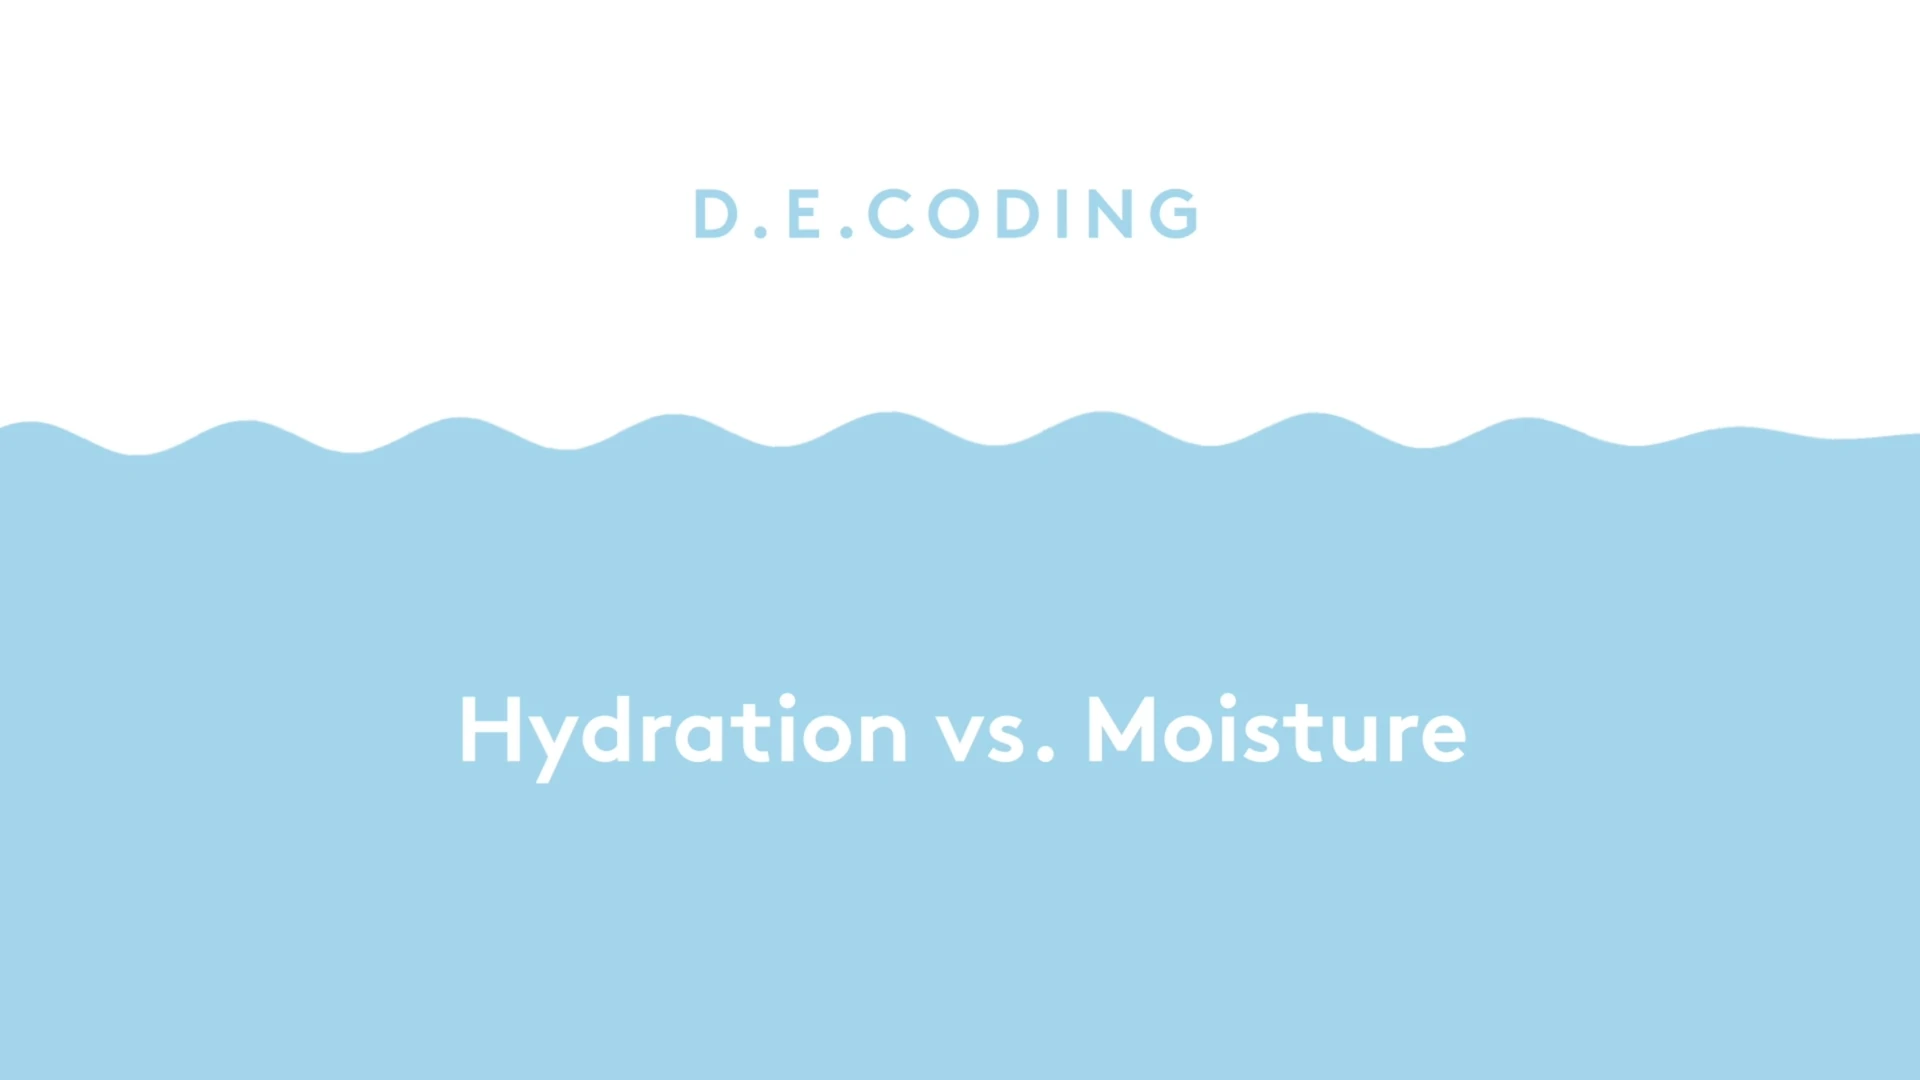 D.E. Coding Hydration v. Moisture, Hellblaue Wellen mit weißem Text